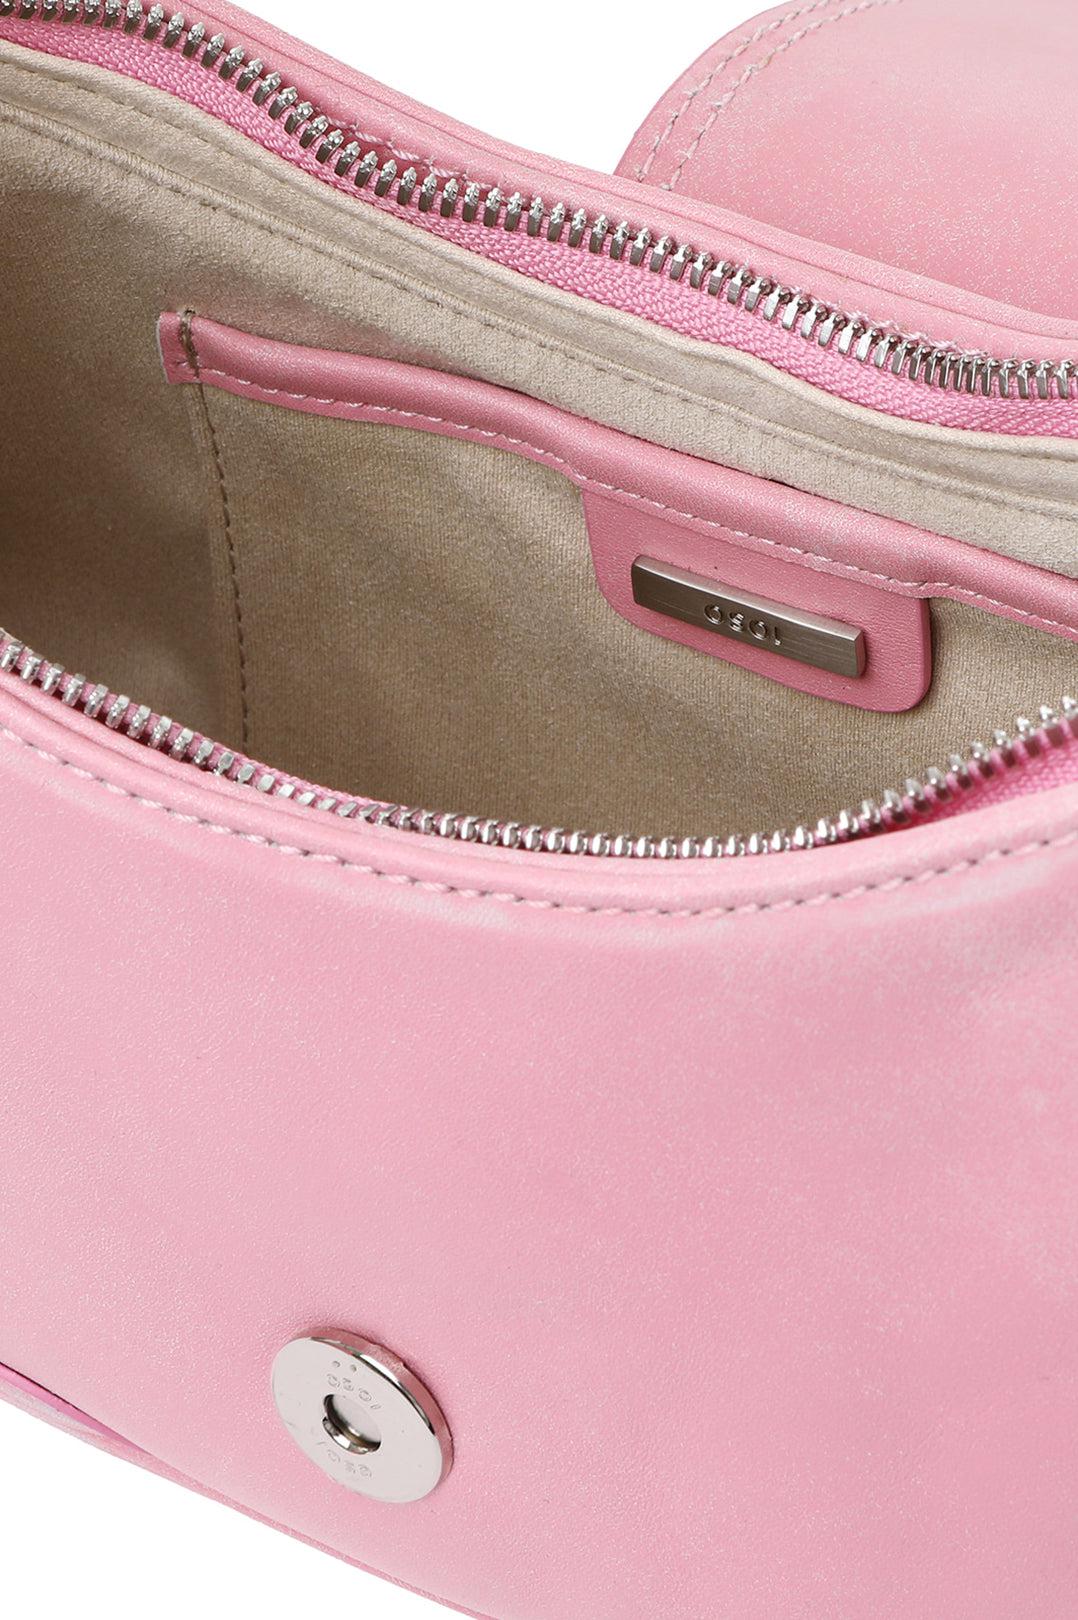 Osoi-Hobo Brocle Vintage Pink Shoulder Bag-23FB050-02-03-dgallerystore